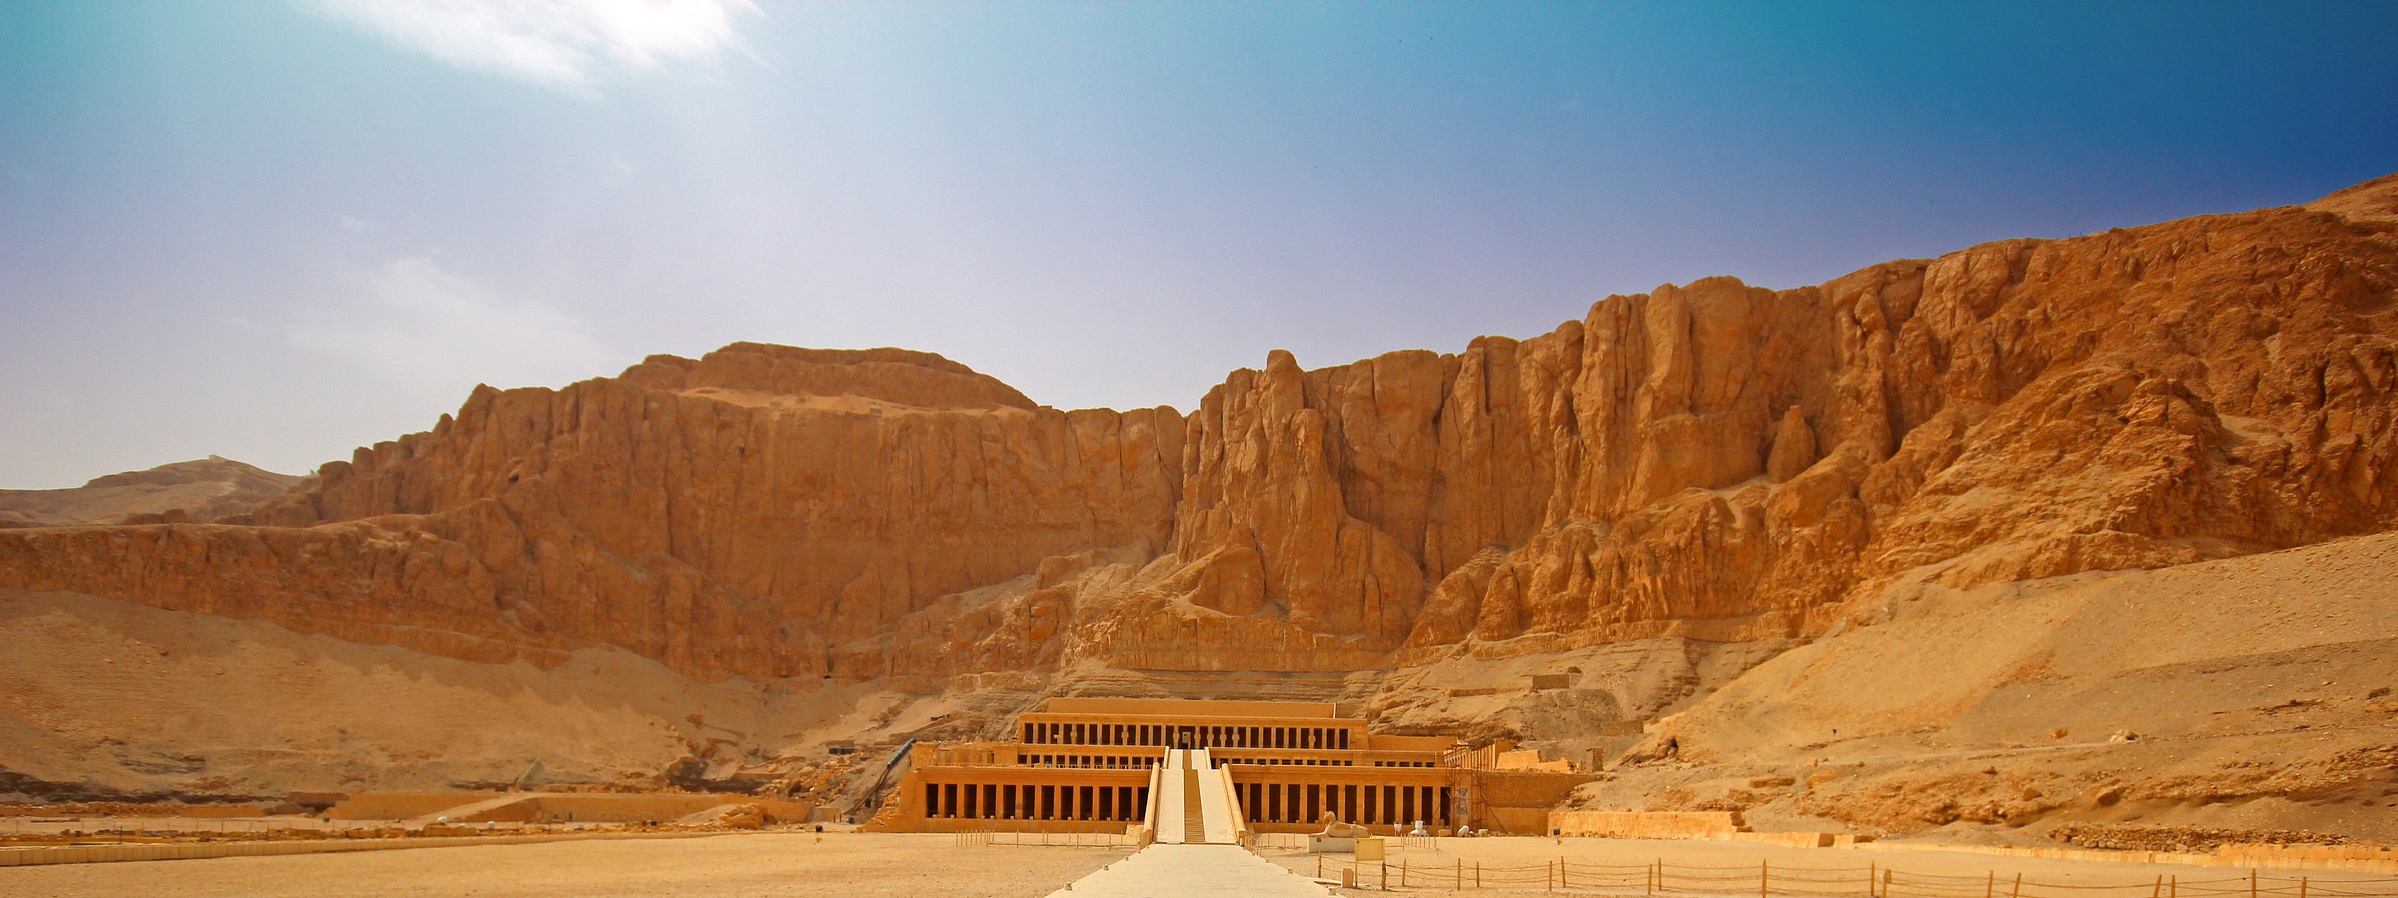 Niers Tours:Operadora de turismo receptivo ao Egito